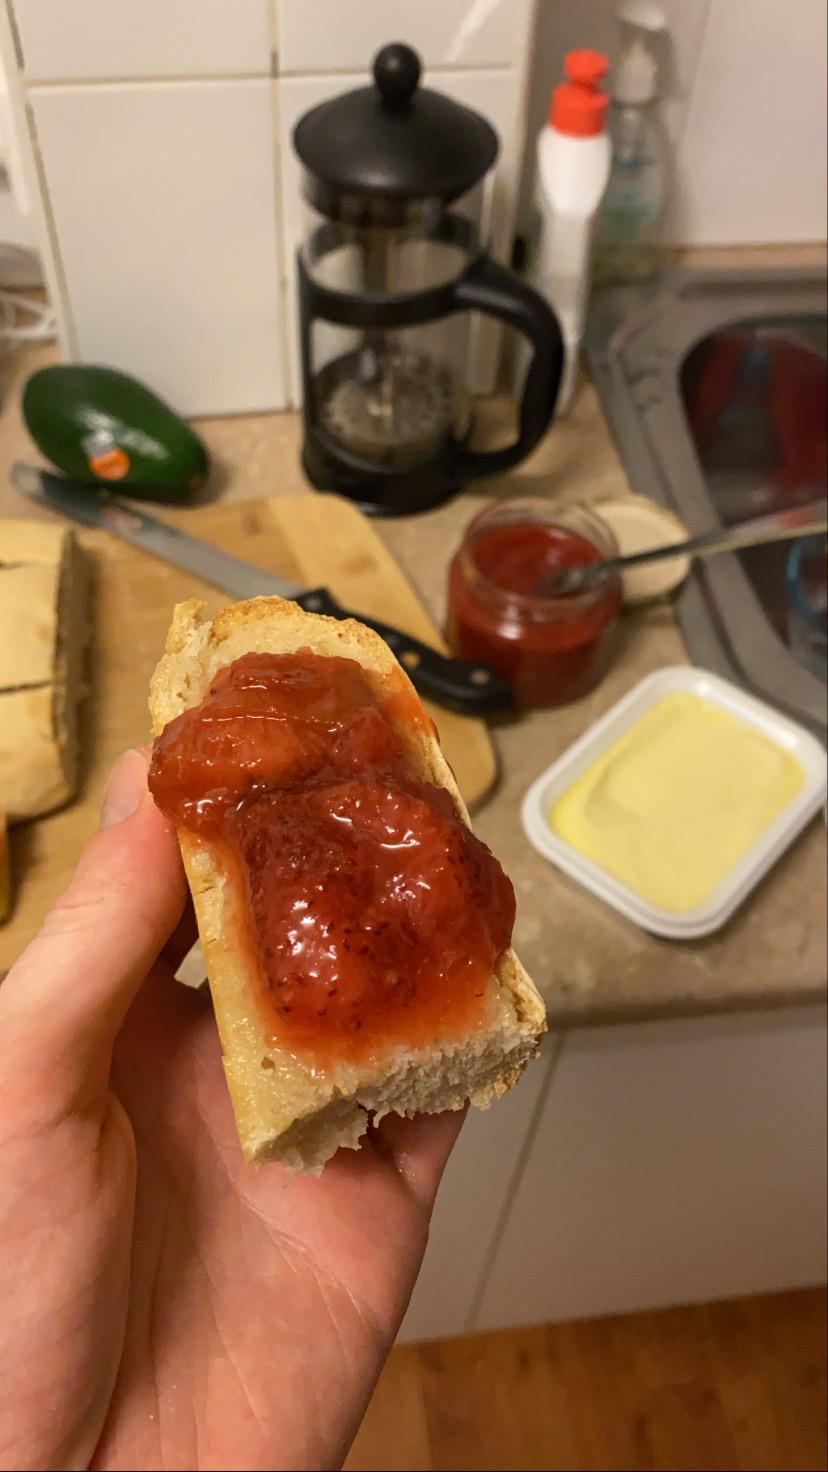 Sourdough with jam